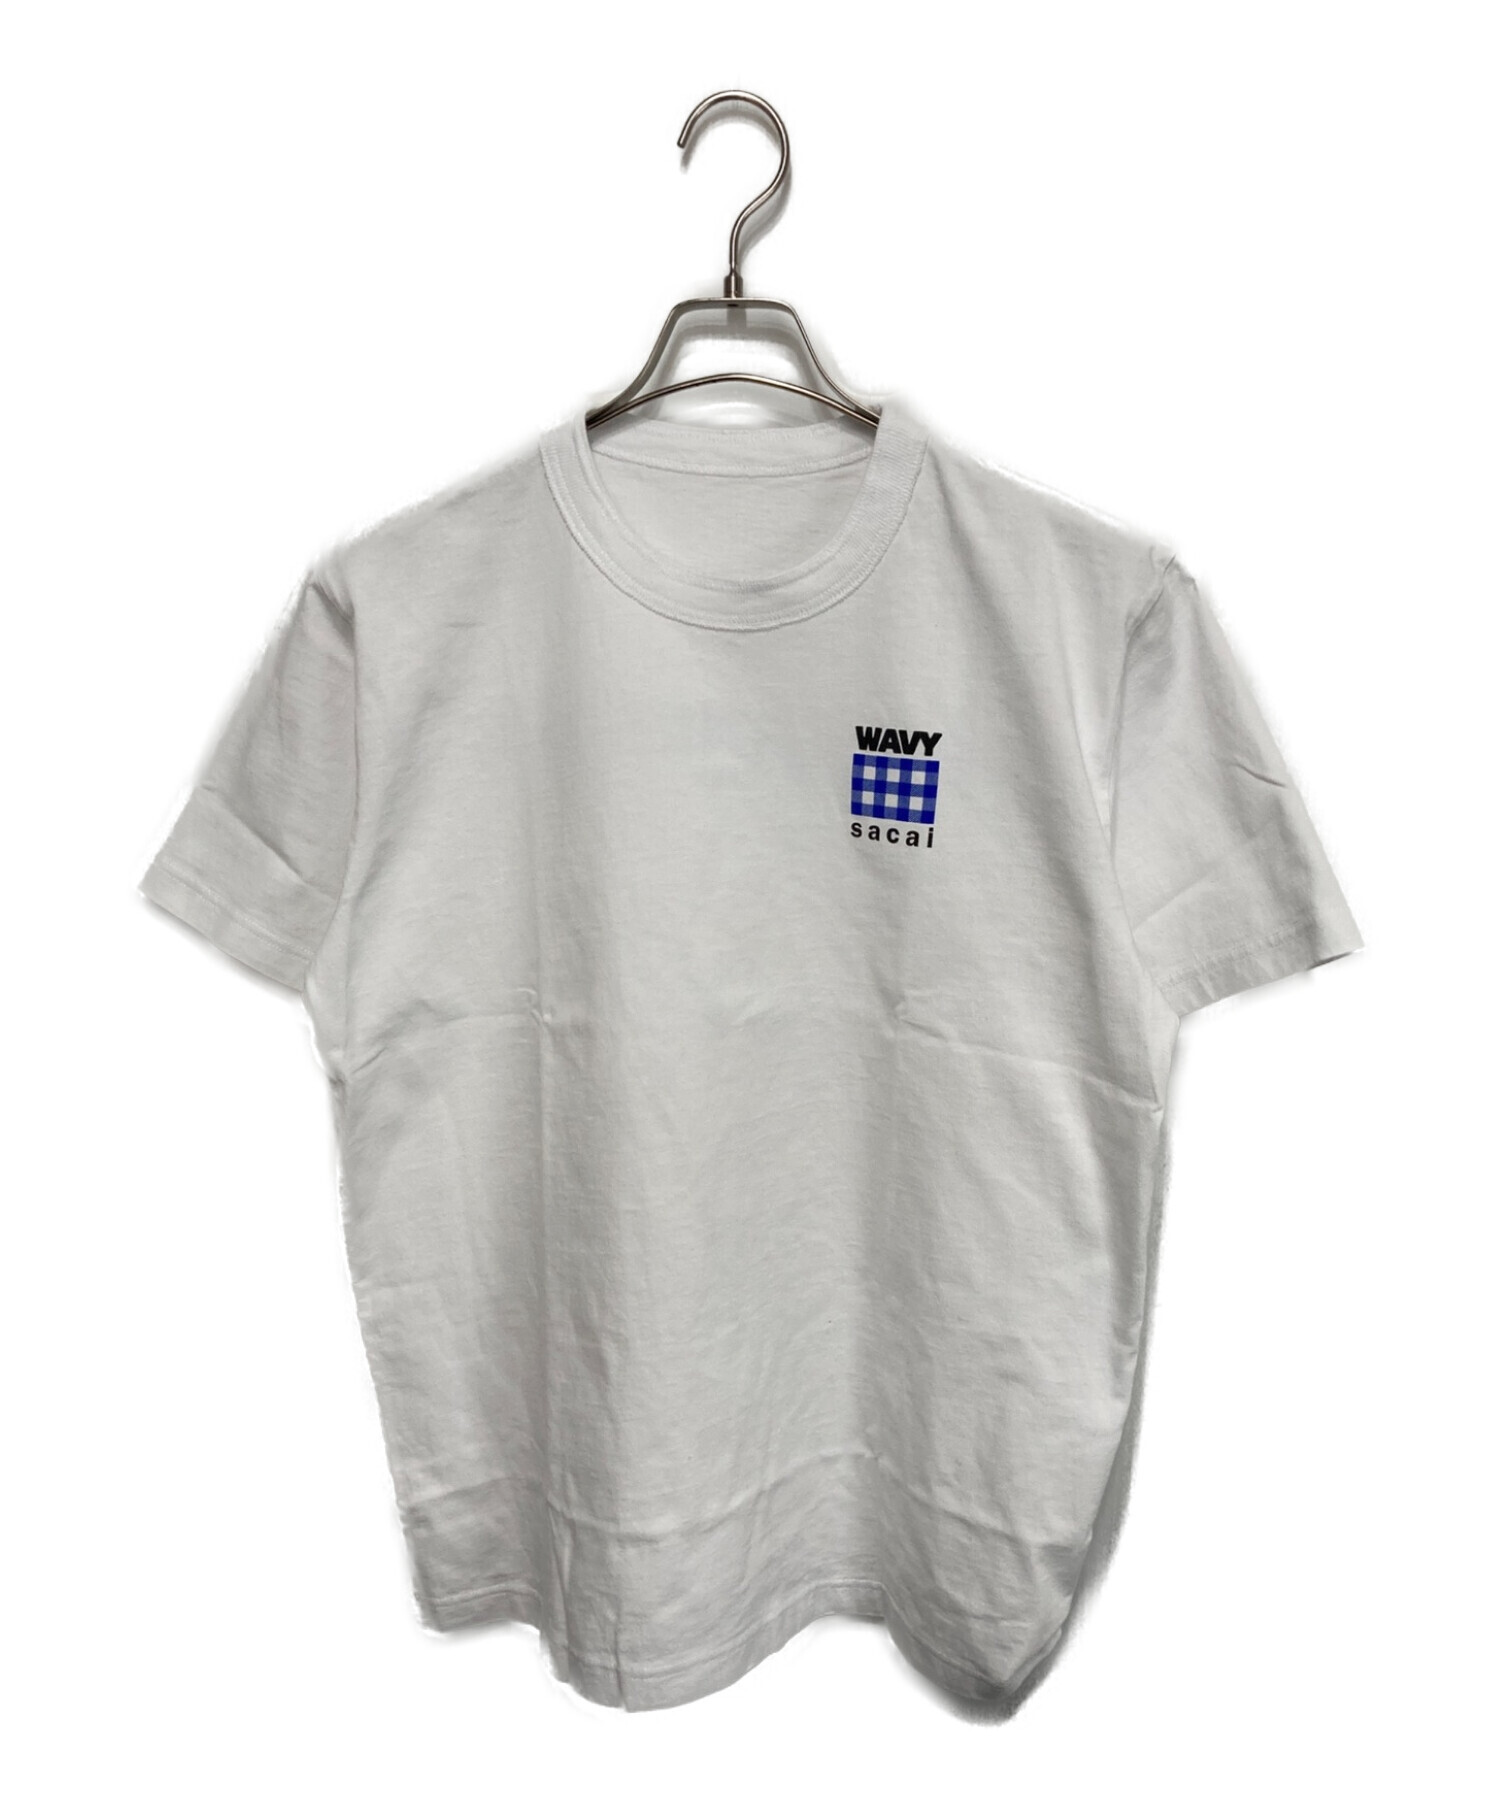 中古・古着通販】sacai (サカイ) WAVY-T-shirt ホワイト サイズ:3